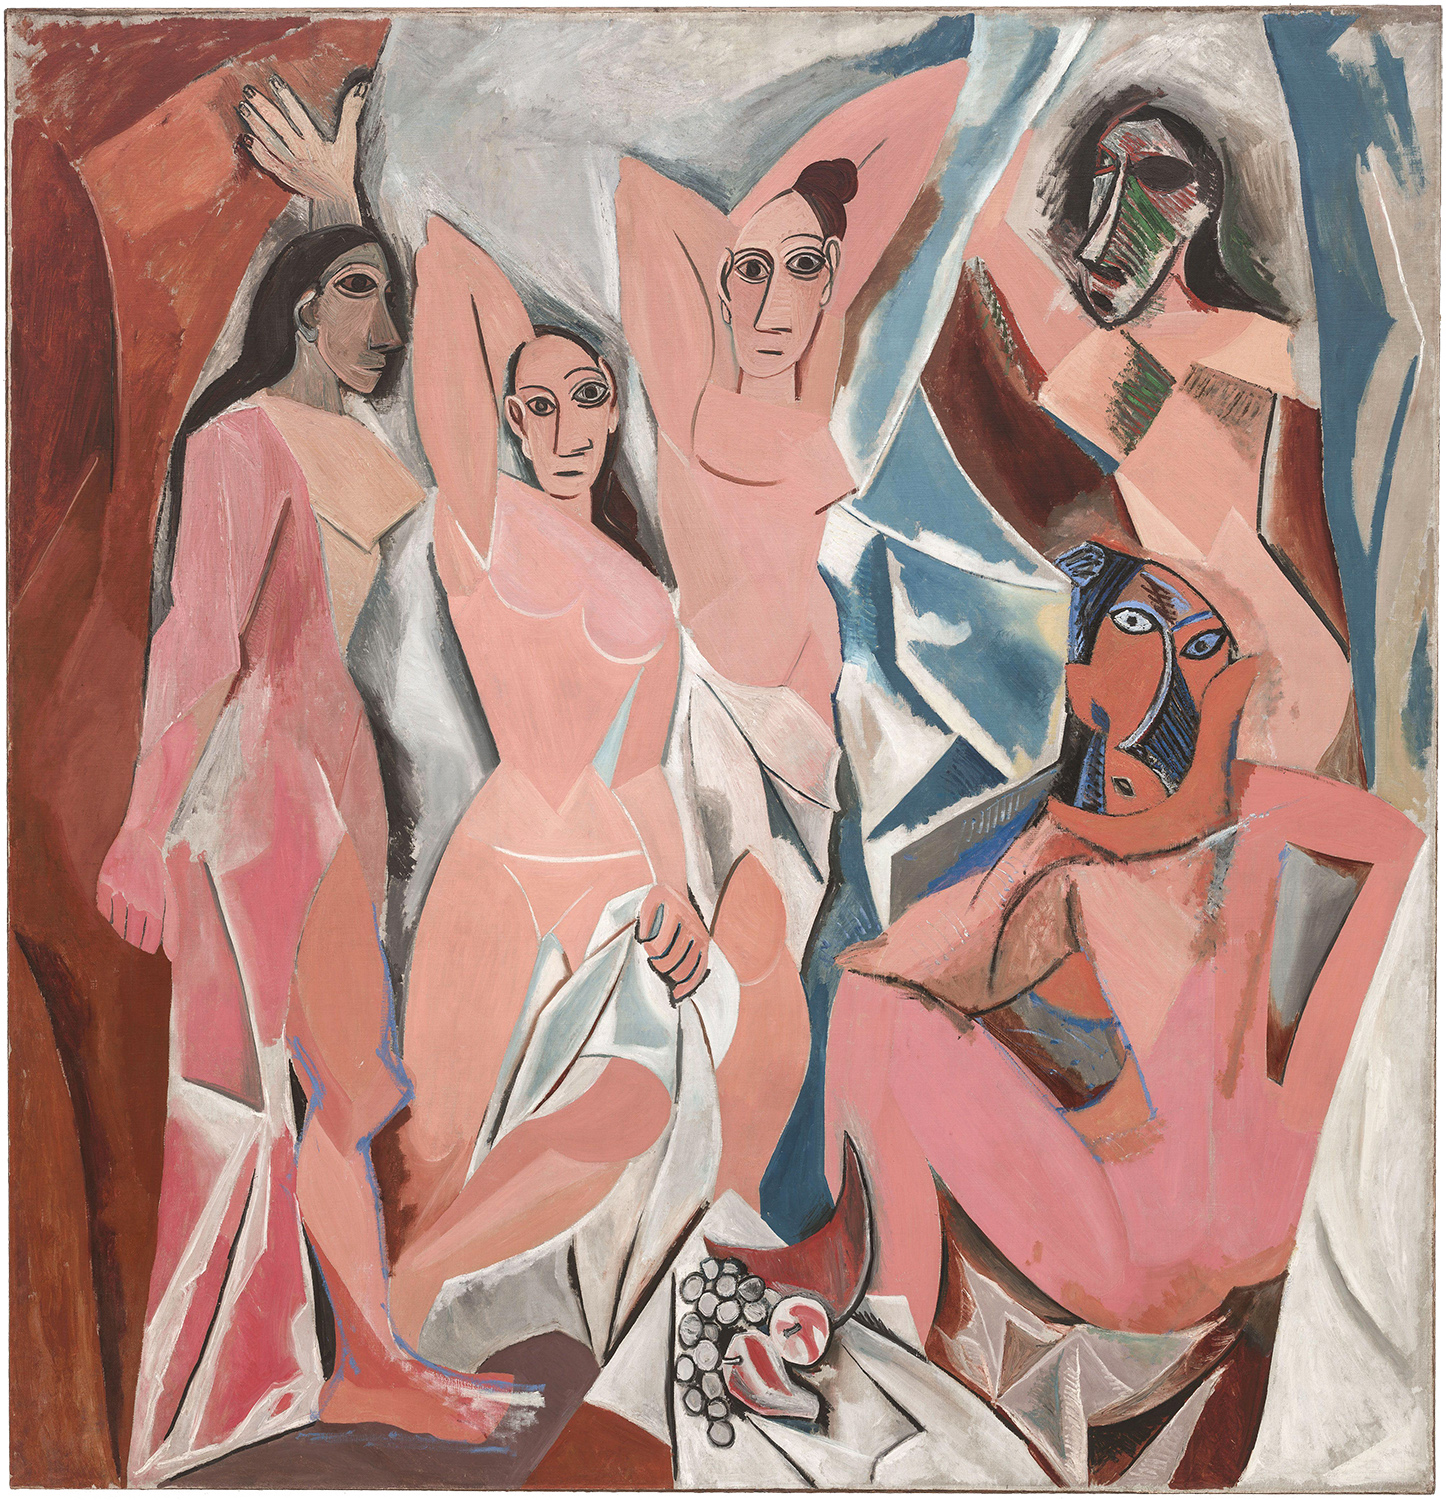 "Les Demoiselles d'Avignon", Picasso, Paris, 1907, óleo sobre tela